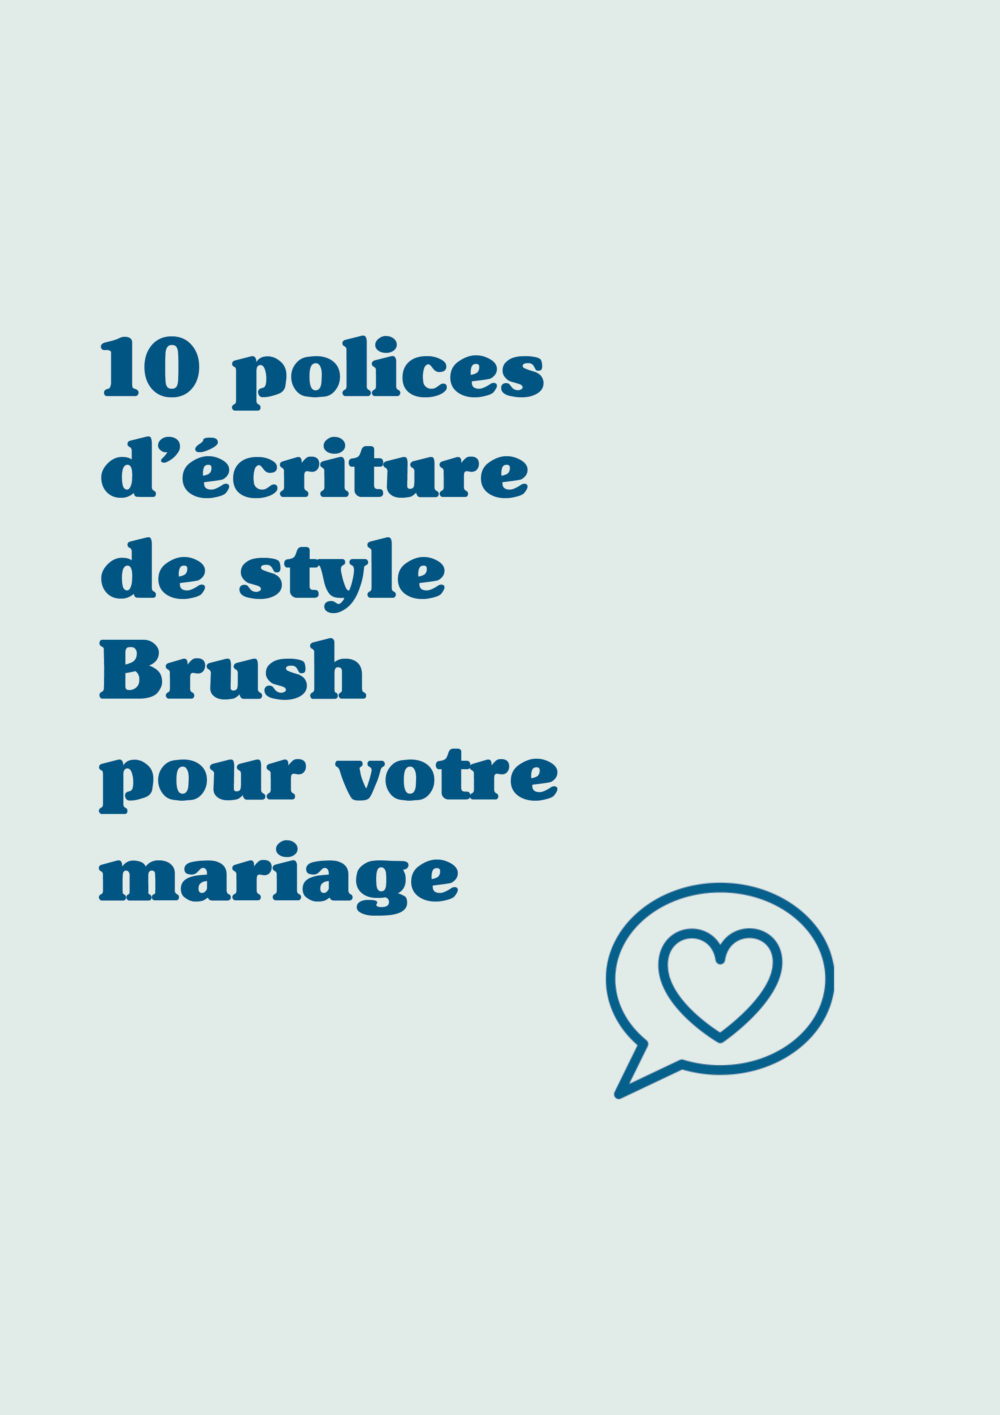 10 polices d'écriture de style Brush pour votre mariage - Blog Mariage Madame C